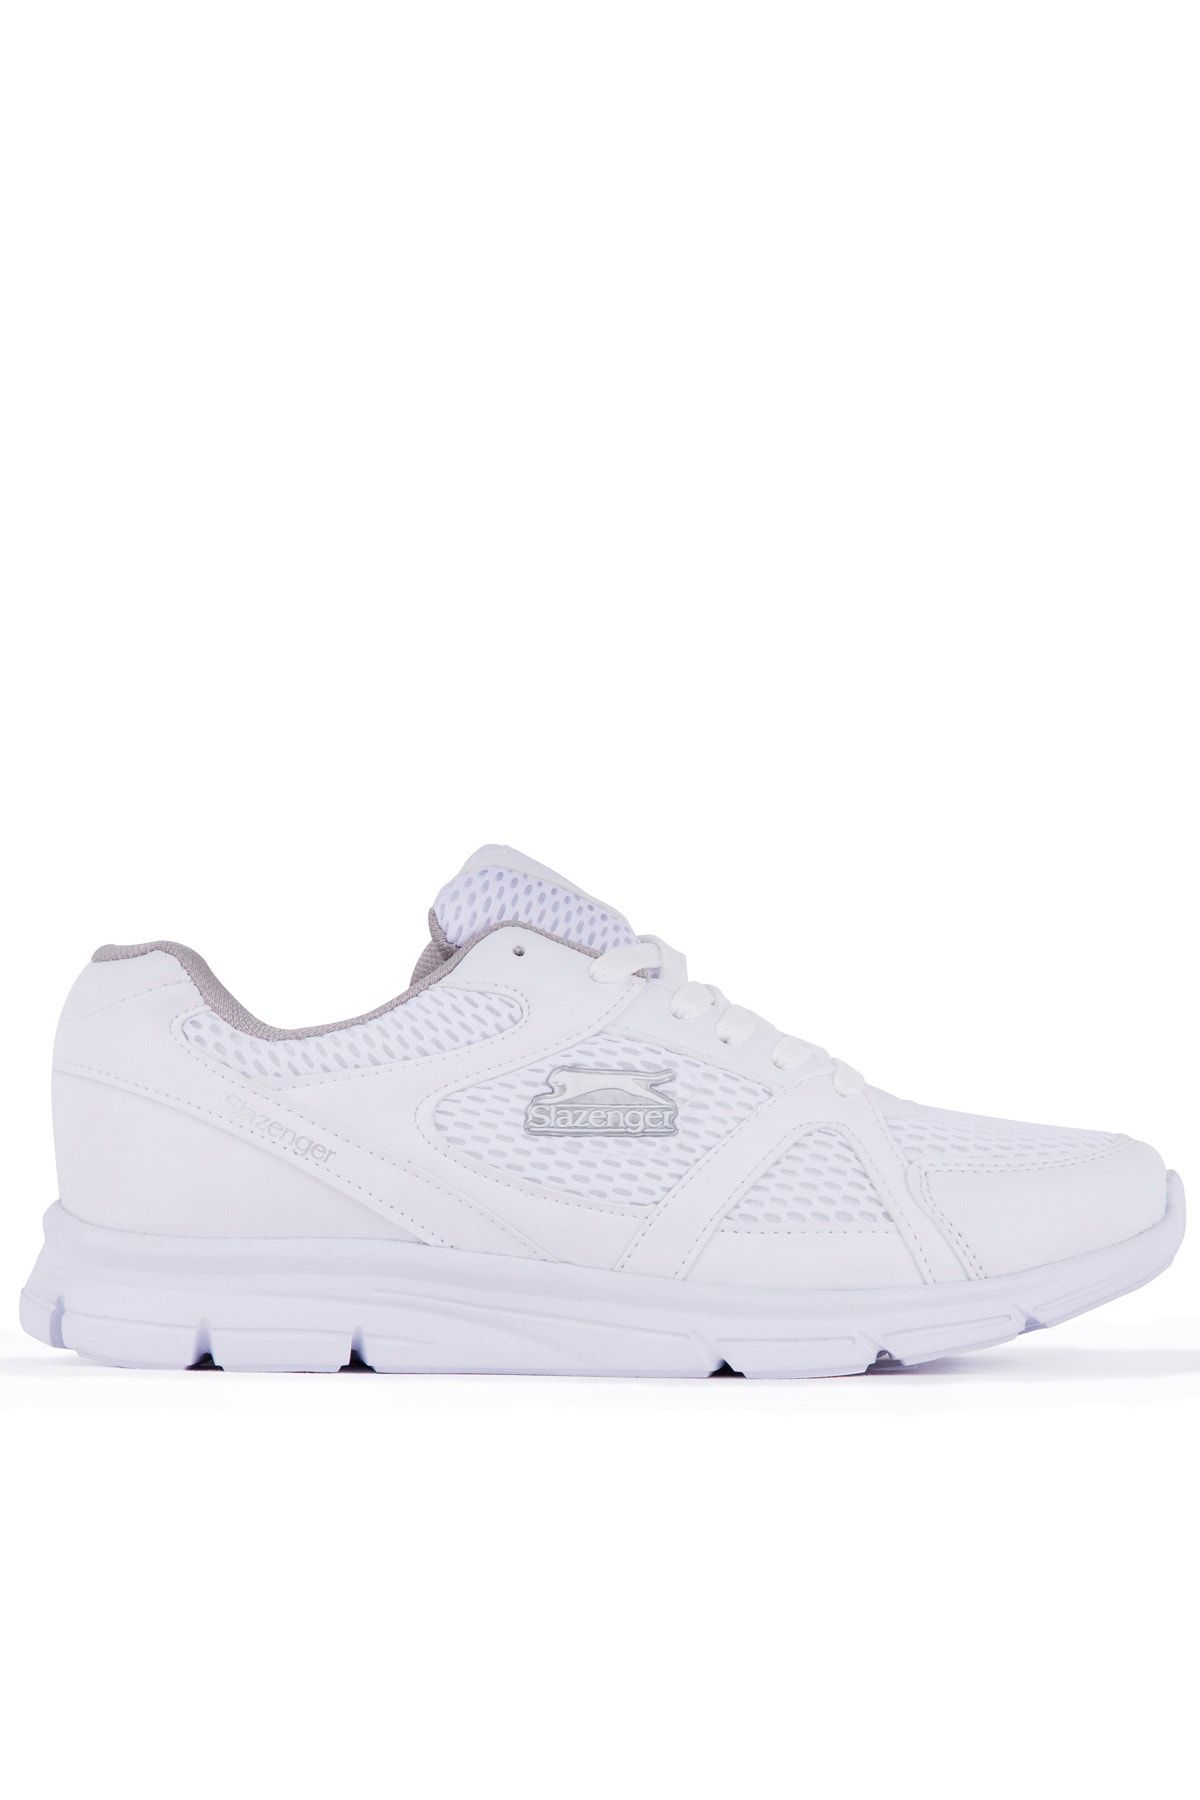 Slazenger Pera Sneaker Kadın Ayakkabı Beyaz Sa10rk021